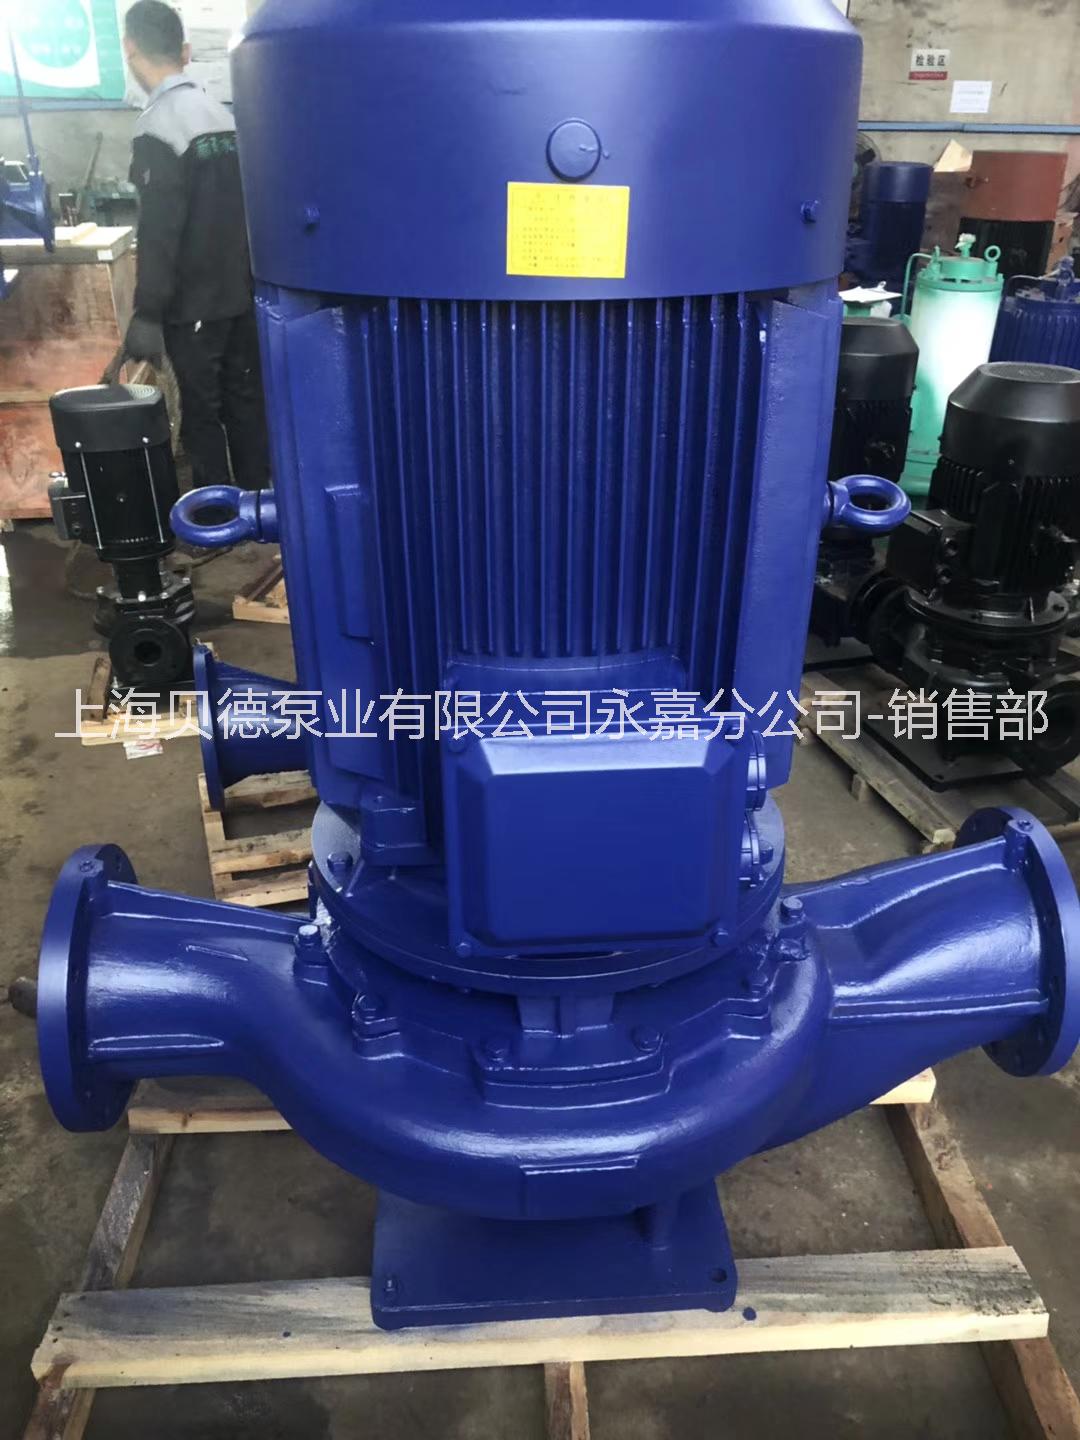 上海贝德泵业有限公司济南办事处ISG150-160  管道循环泵 自动单级单吸管道泵  IRG热水型管道循环泵